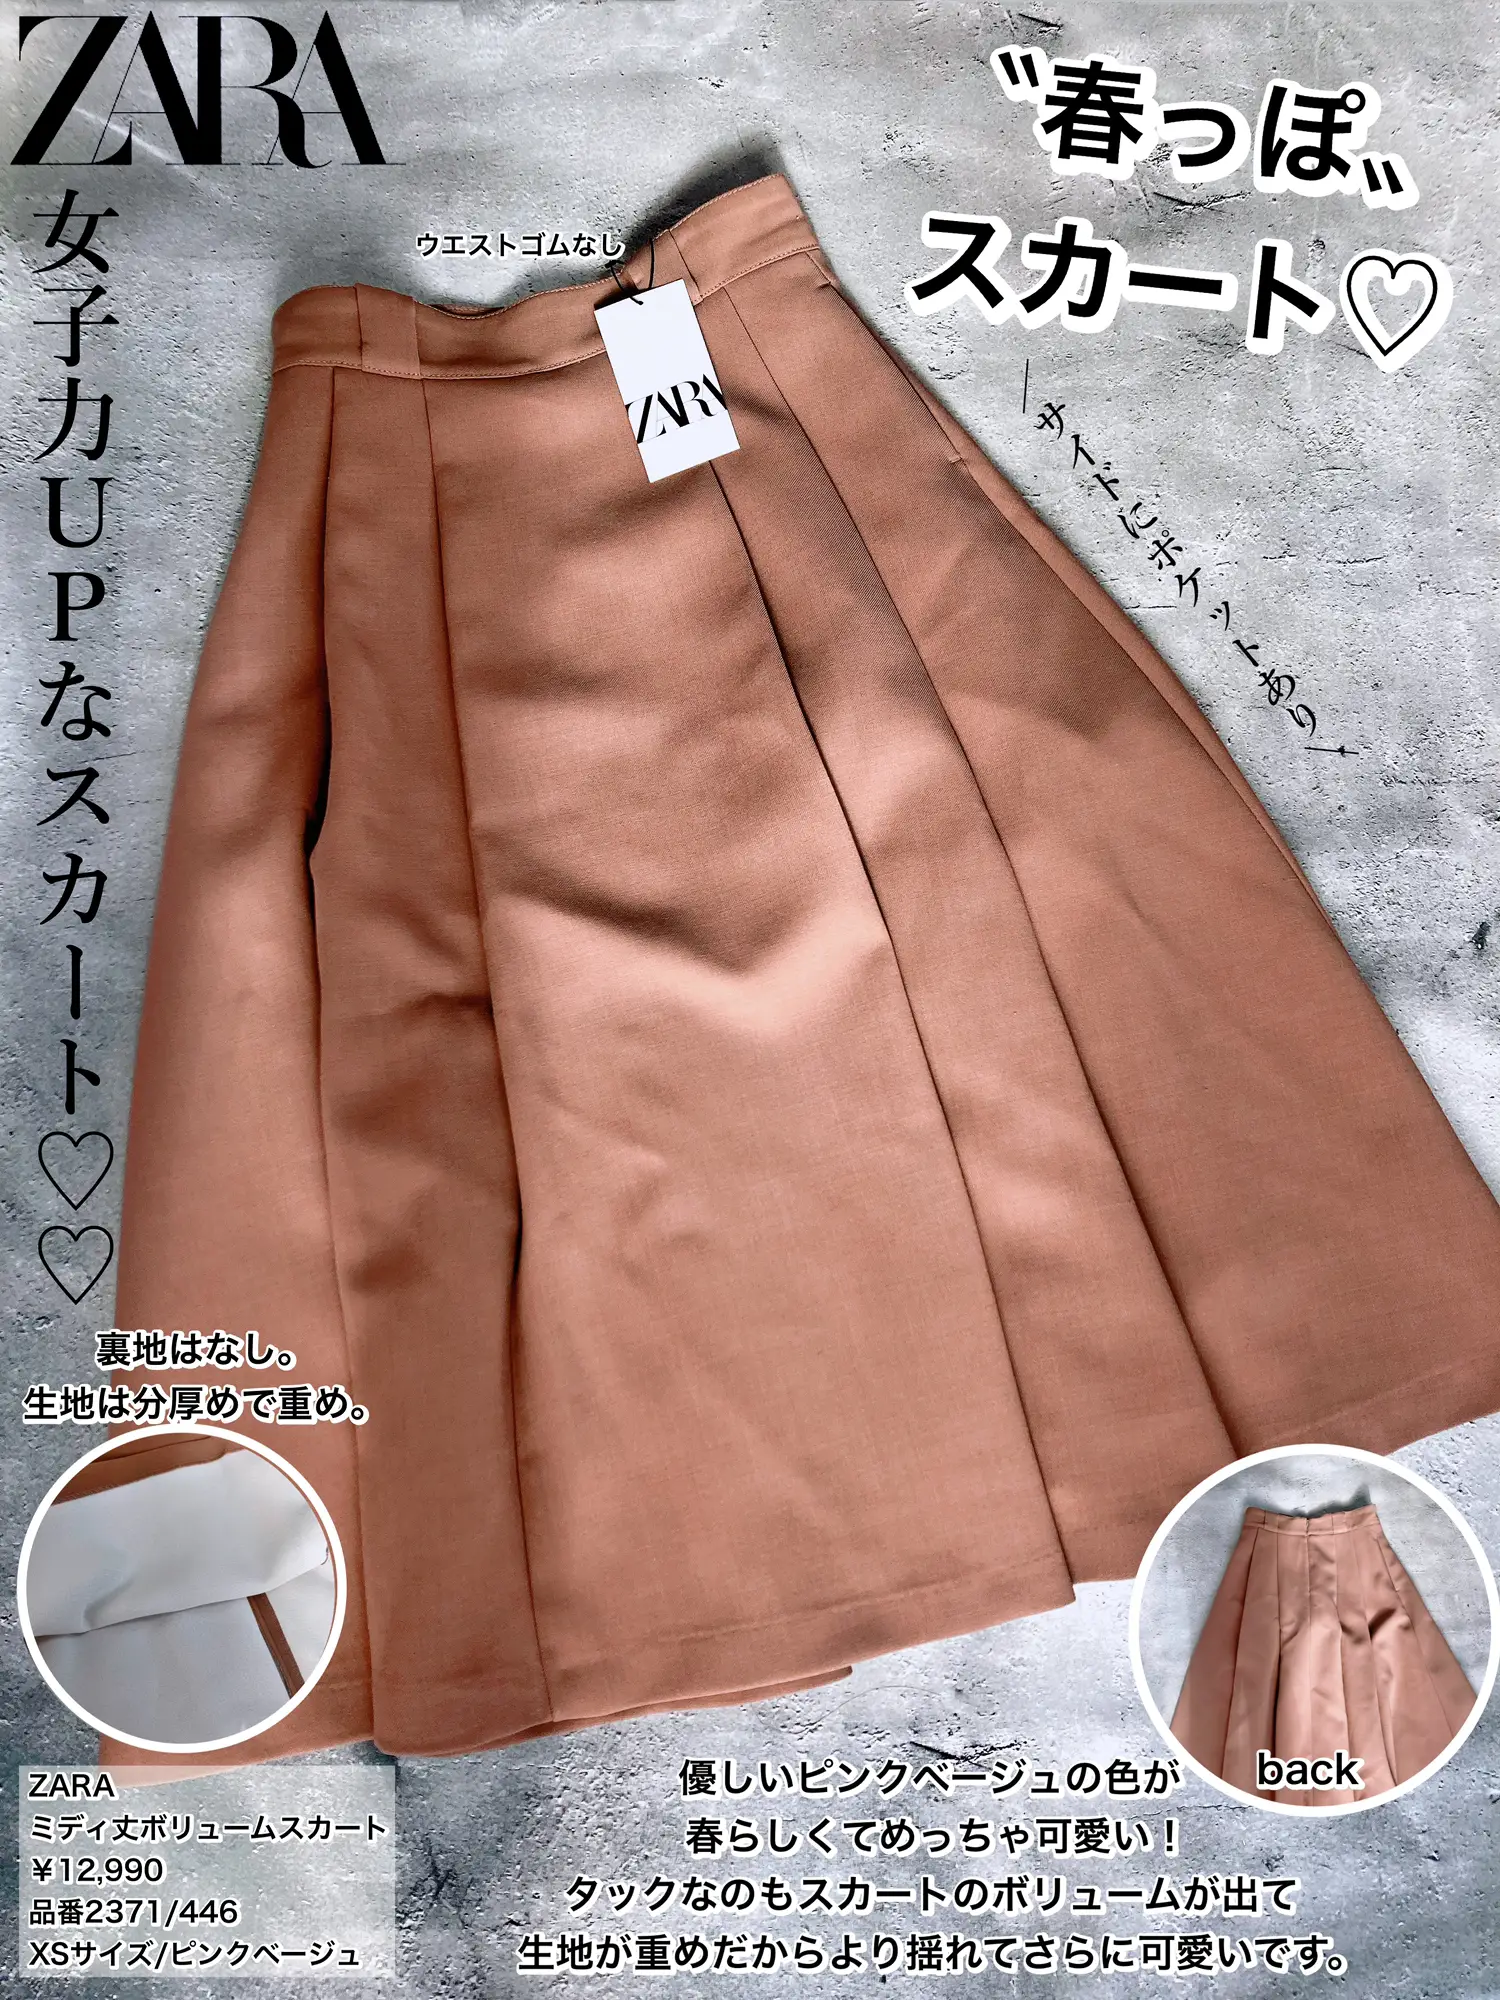 ZARA】見つけたら即買い案件♡春に映える、ピンクベージュのスカート